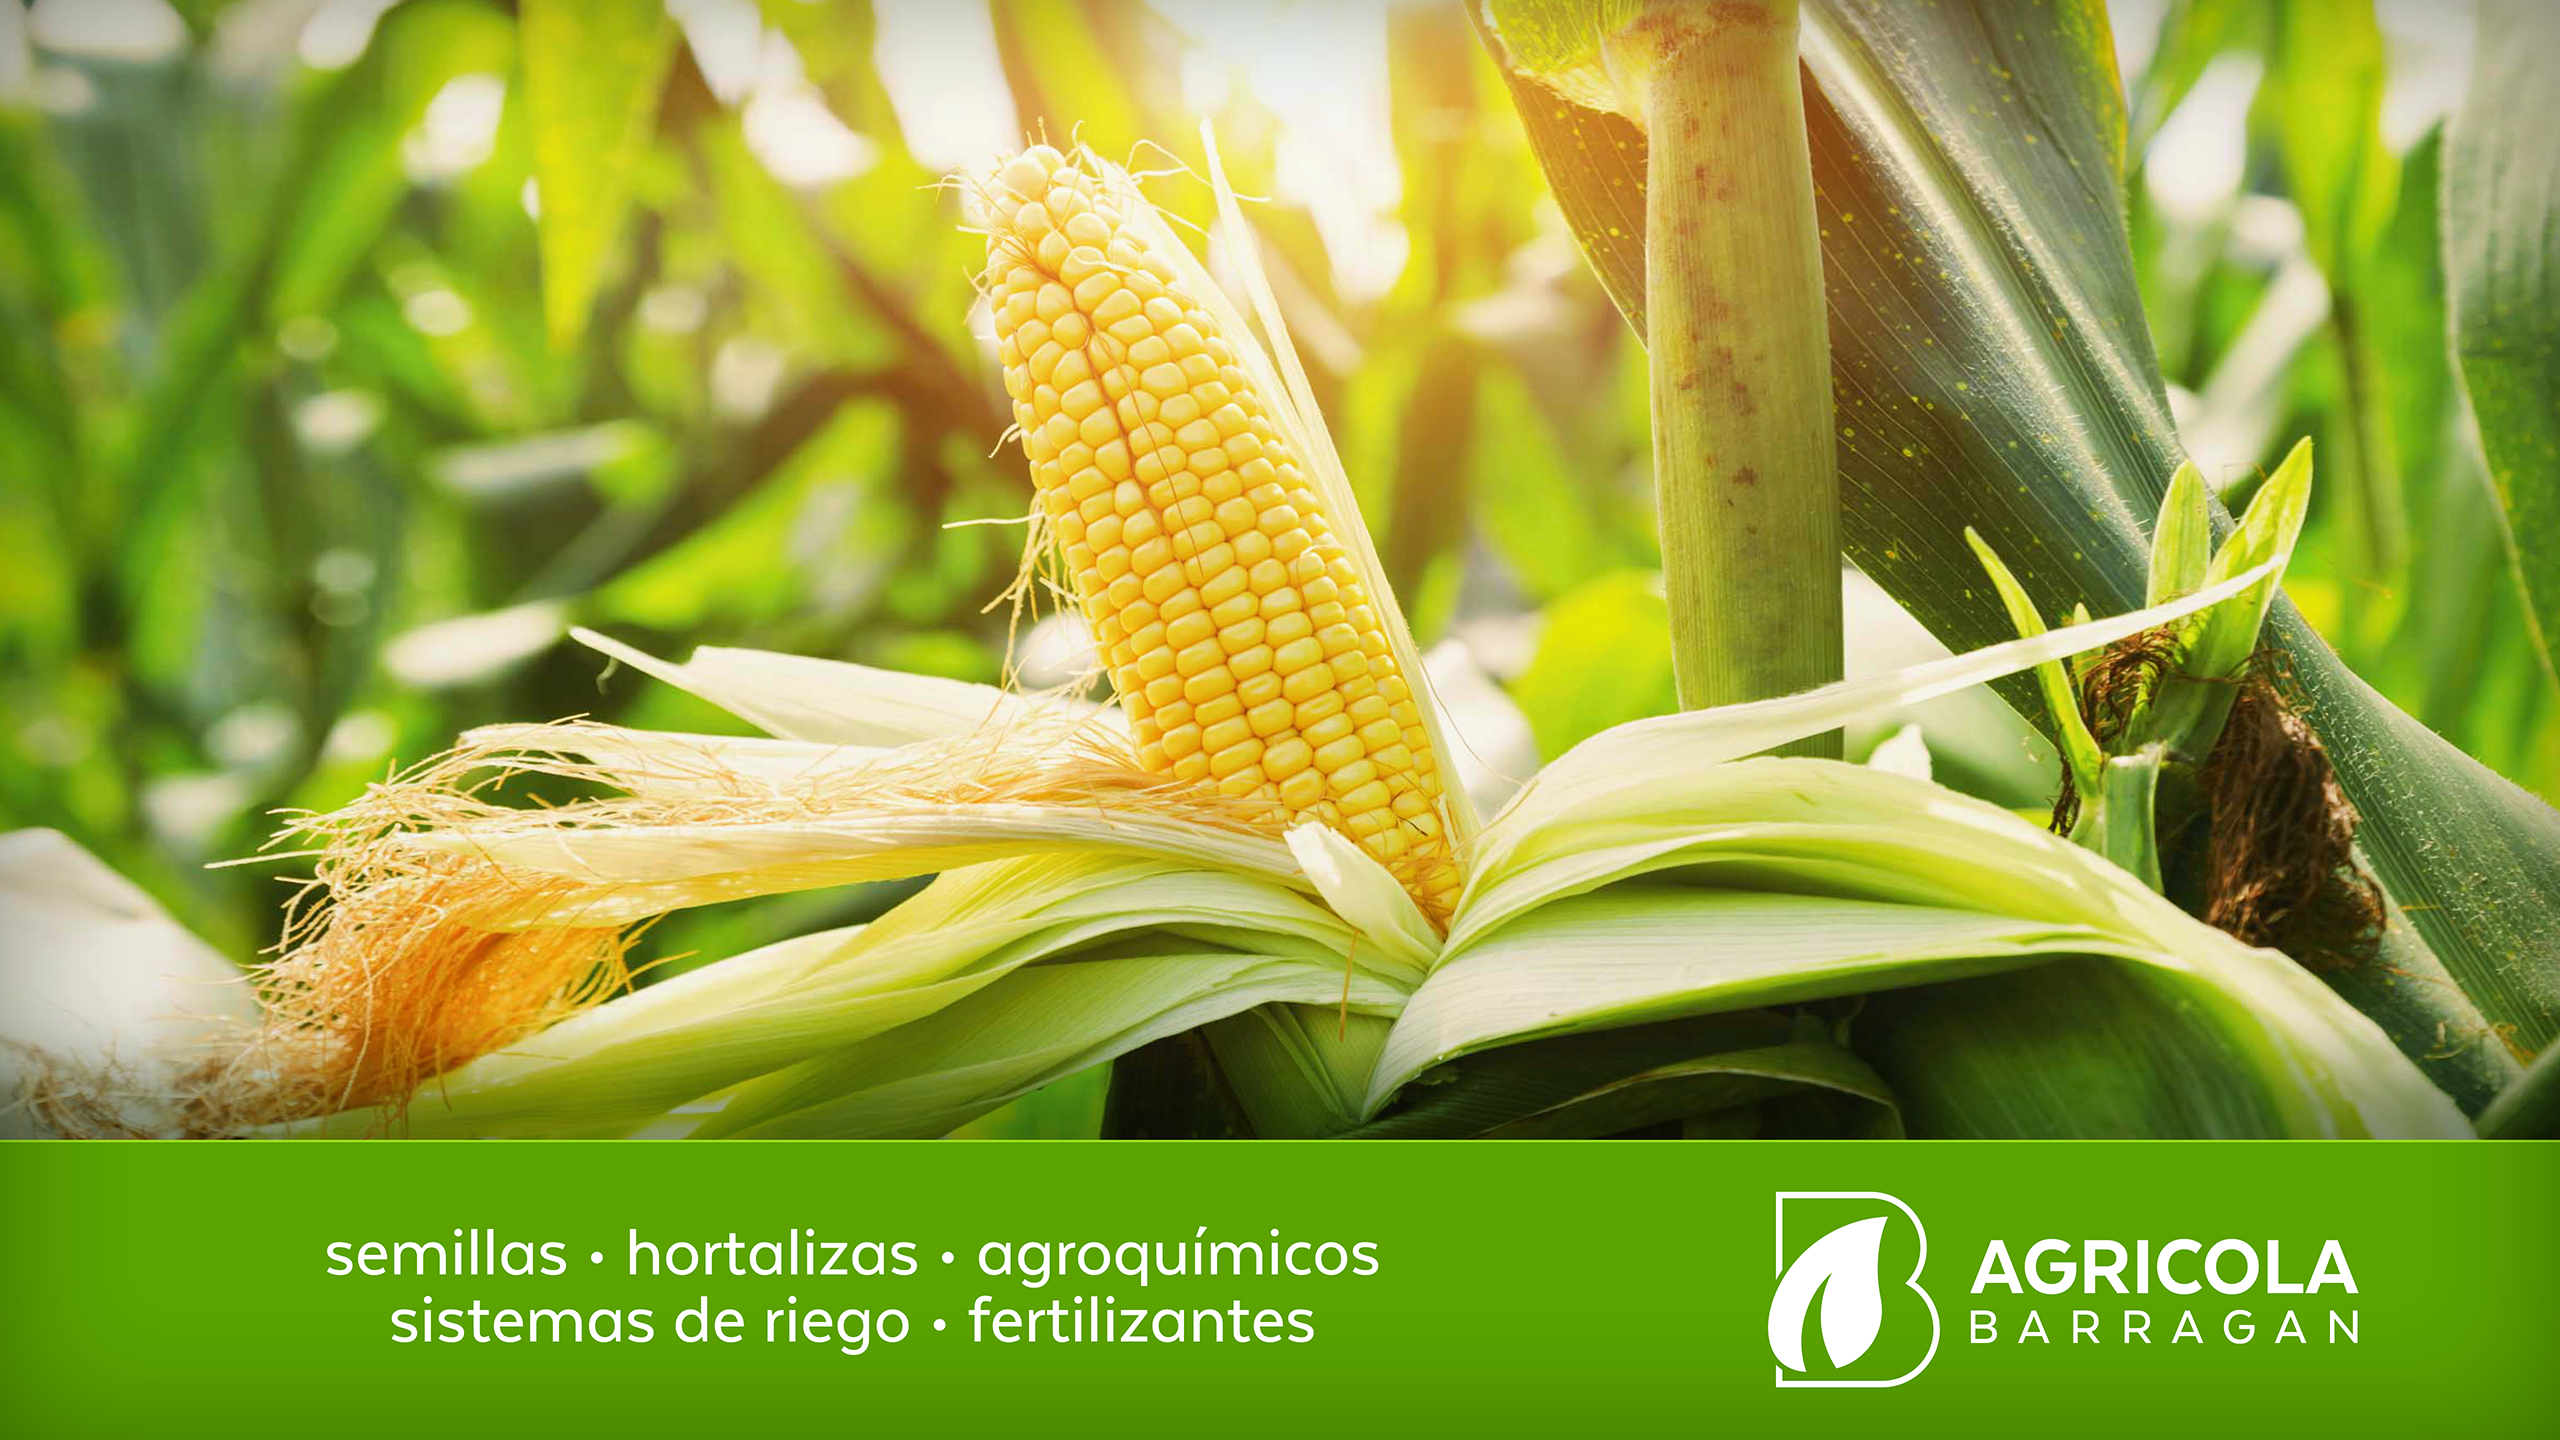 Semillas, Hortalizas, Agroquímicos y Fertilizantes "Agrícola Barragán" Poster